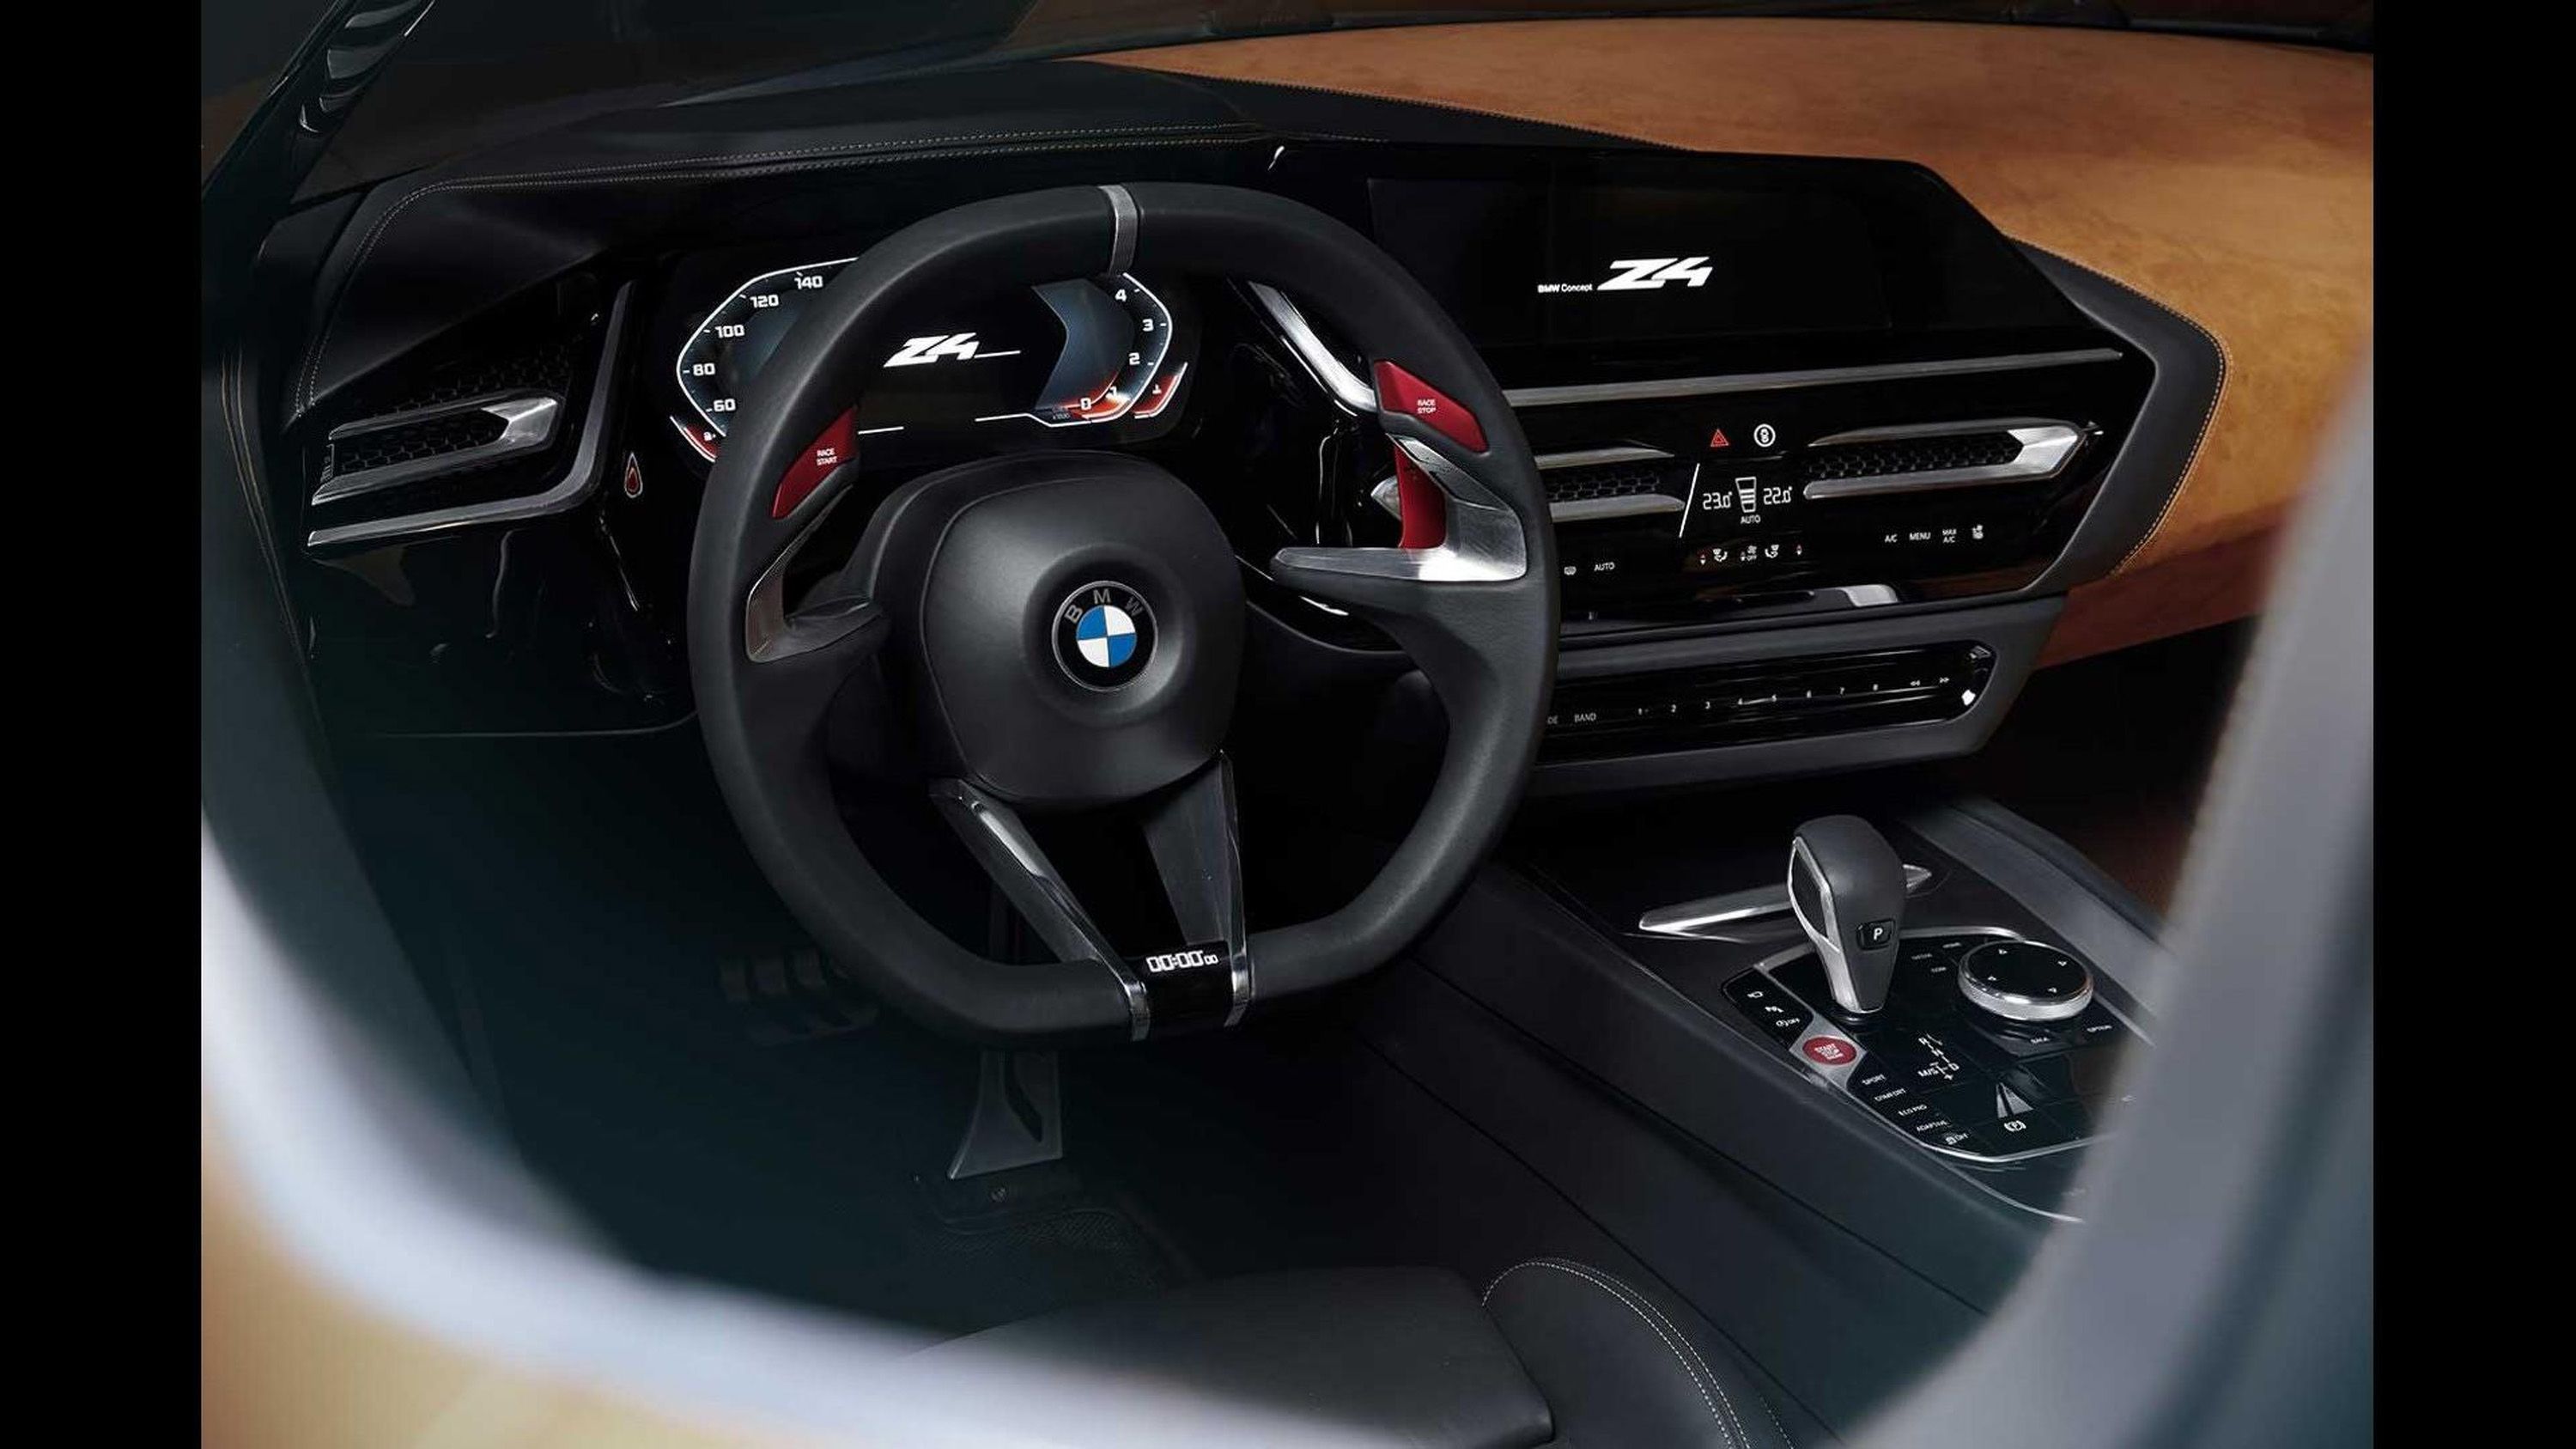 2019 BMW Z4